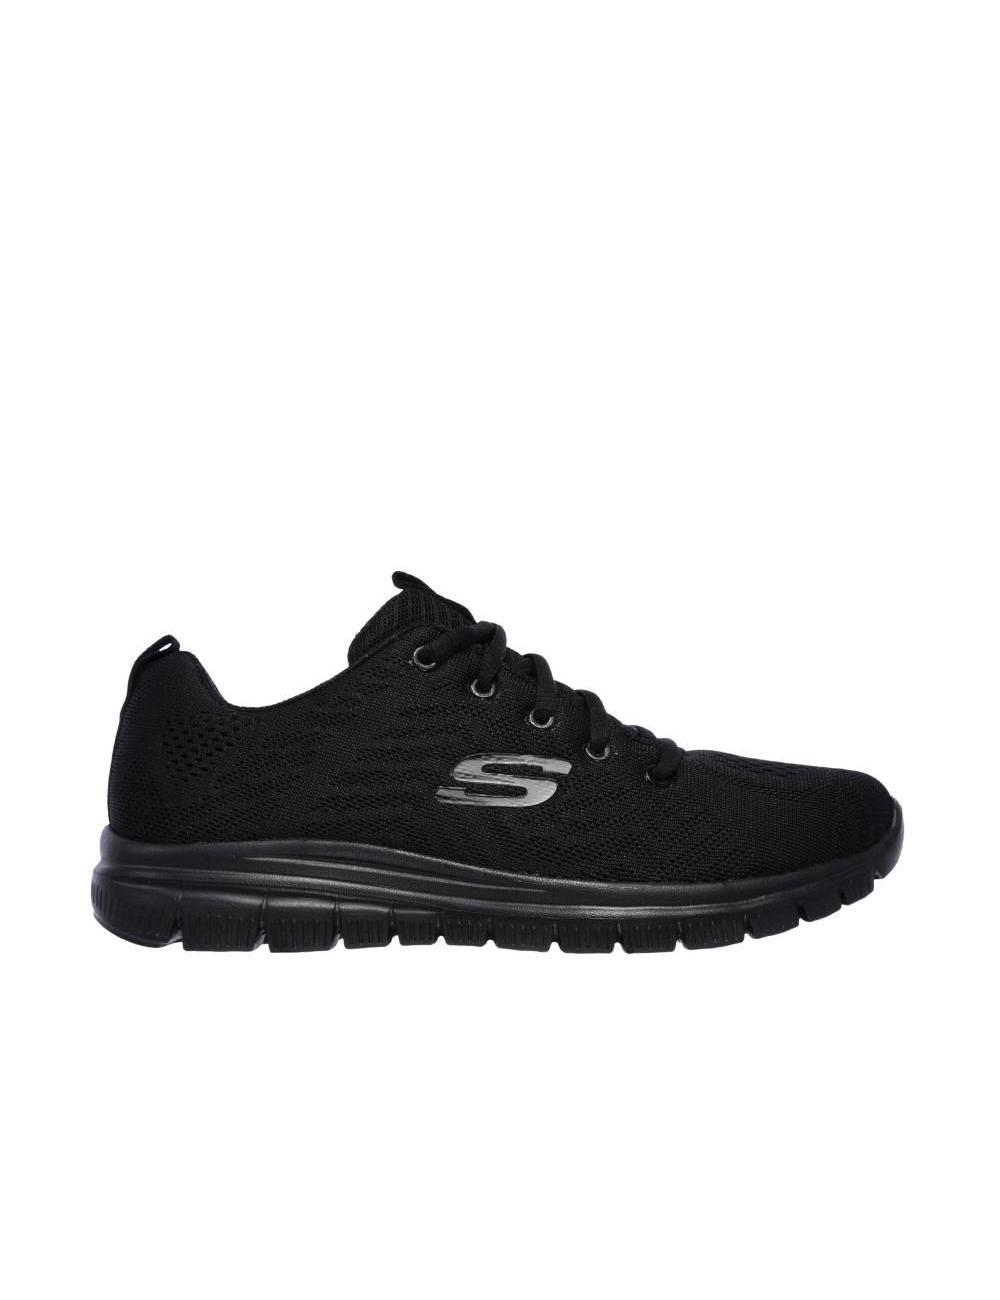 Zapatillas de trabajo de mujer SKECHERS 12985-bbk color negro